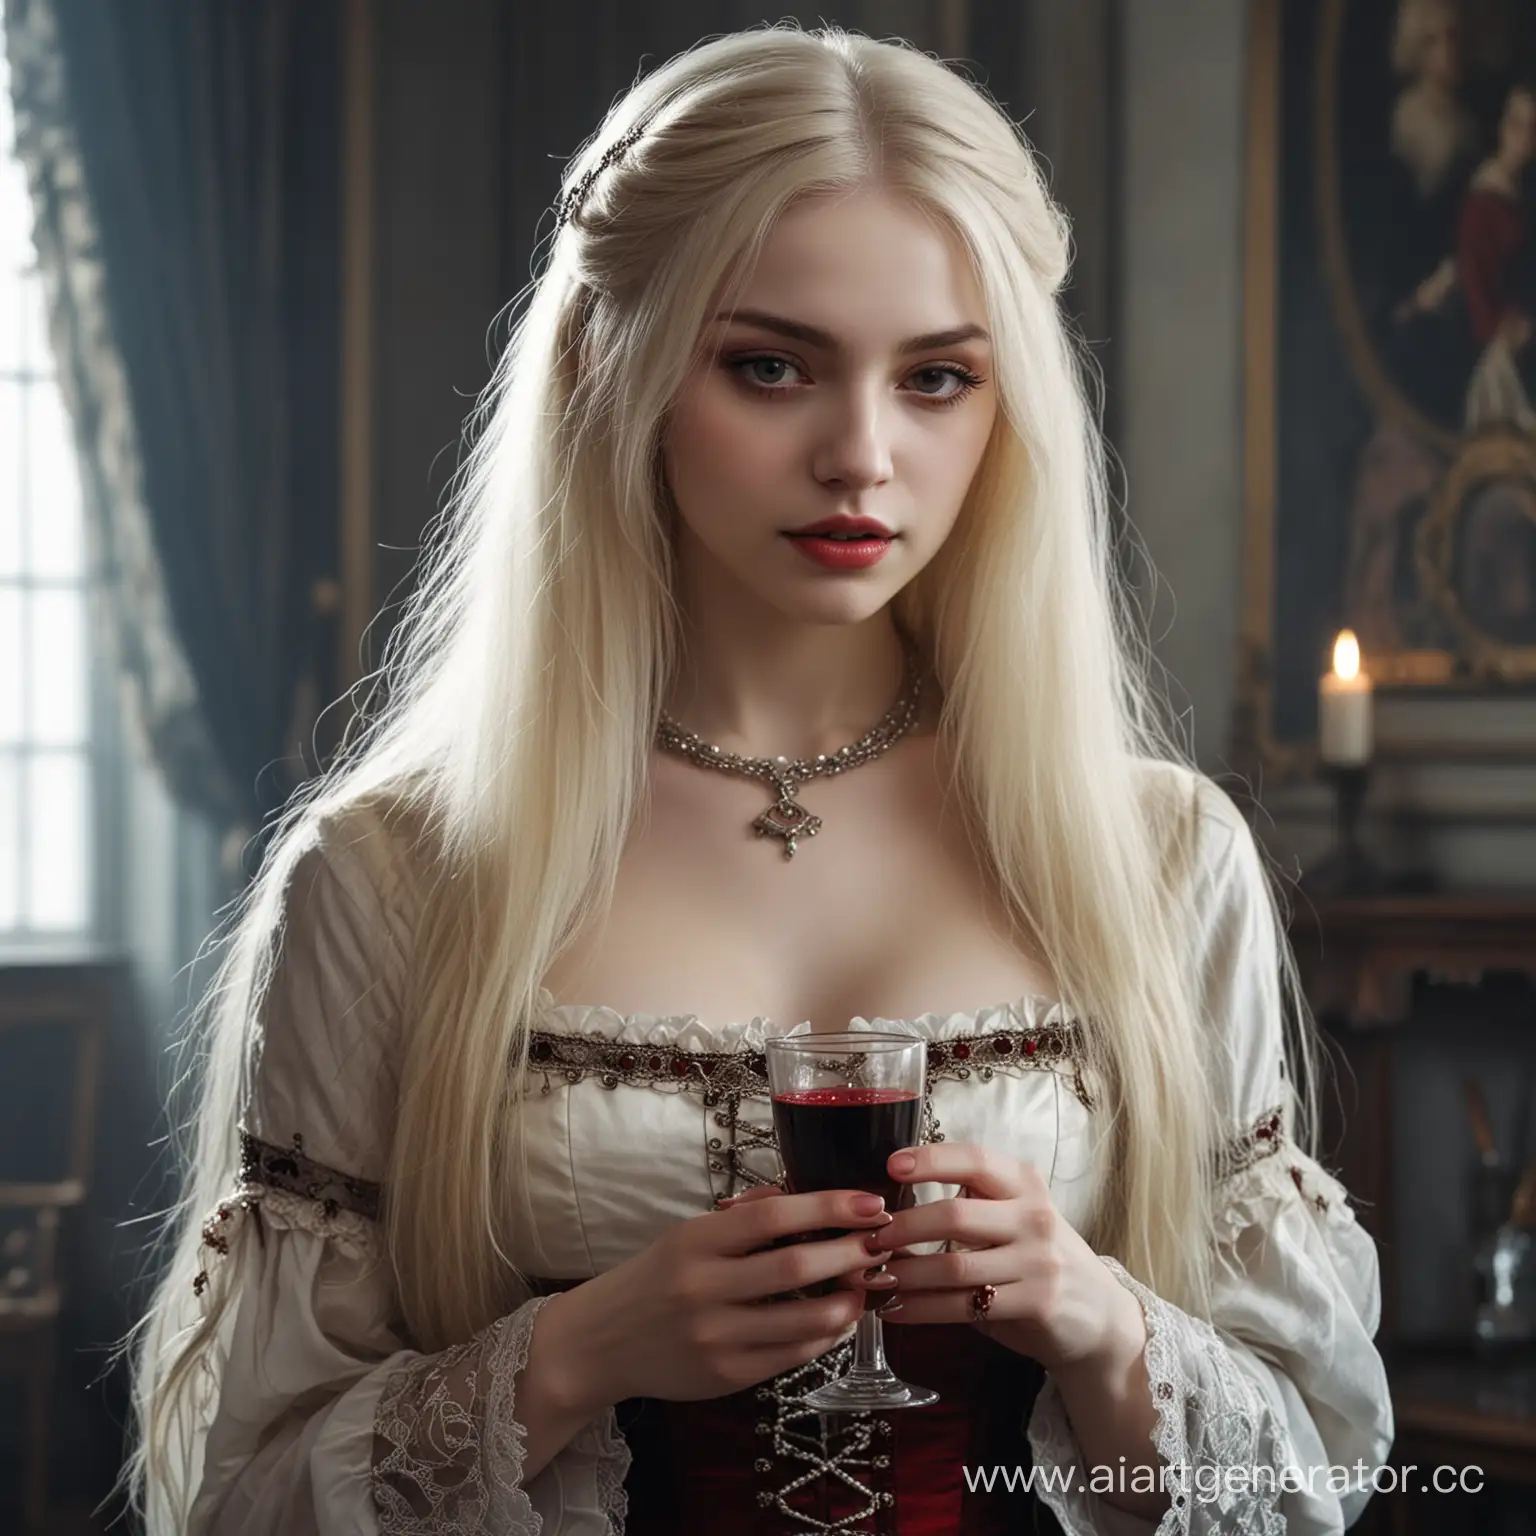 Девушка молодая вампир, с очень бледной кожей, волосы светлые длинные, в аристократичной одежде, с бокалом крови, фэнтезийный мир